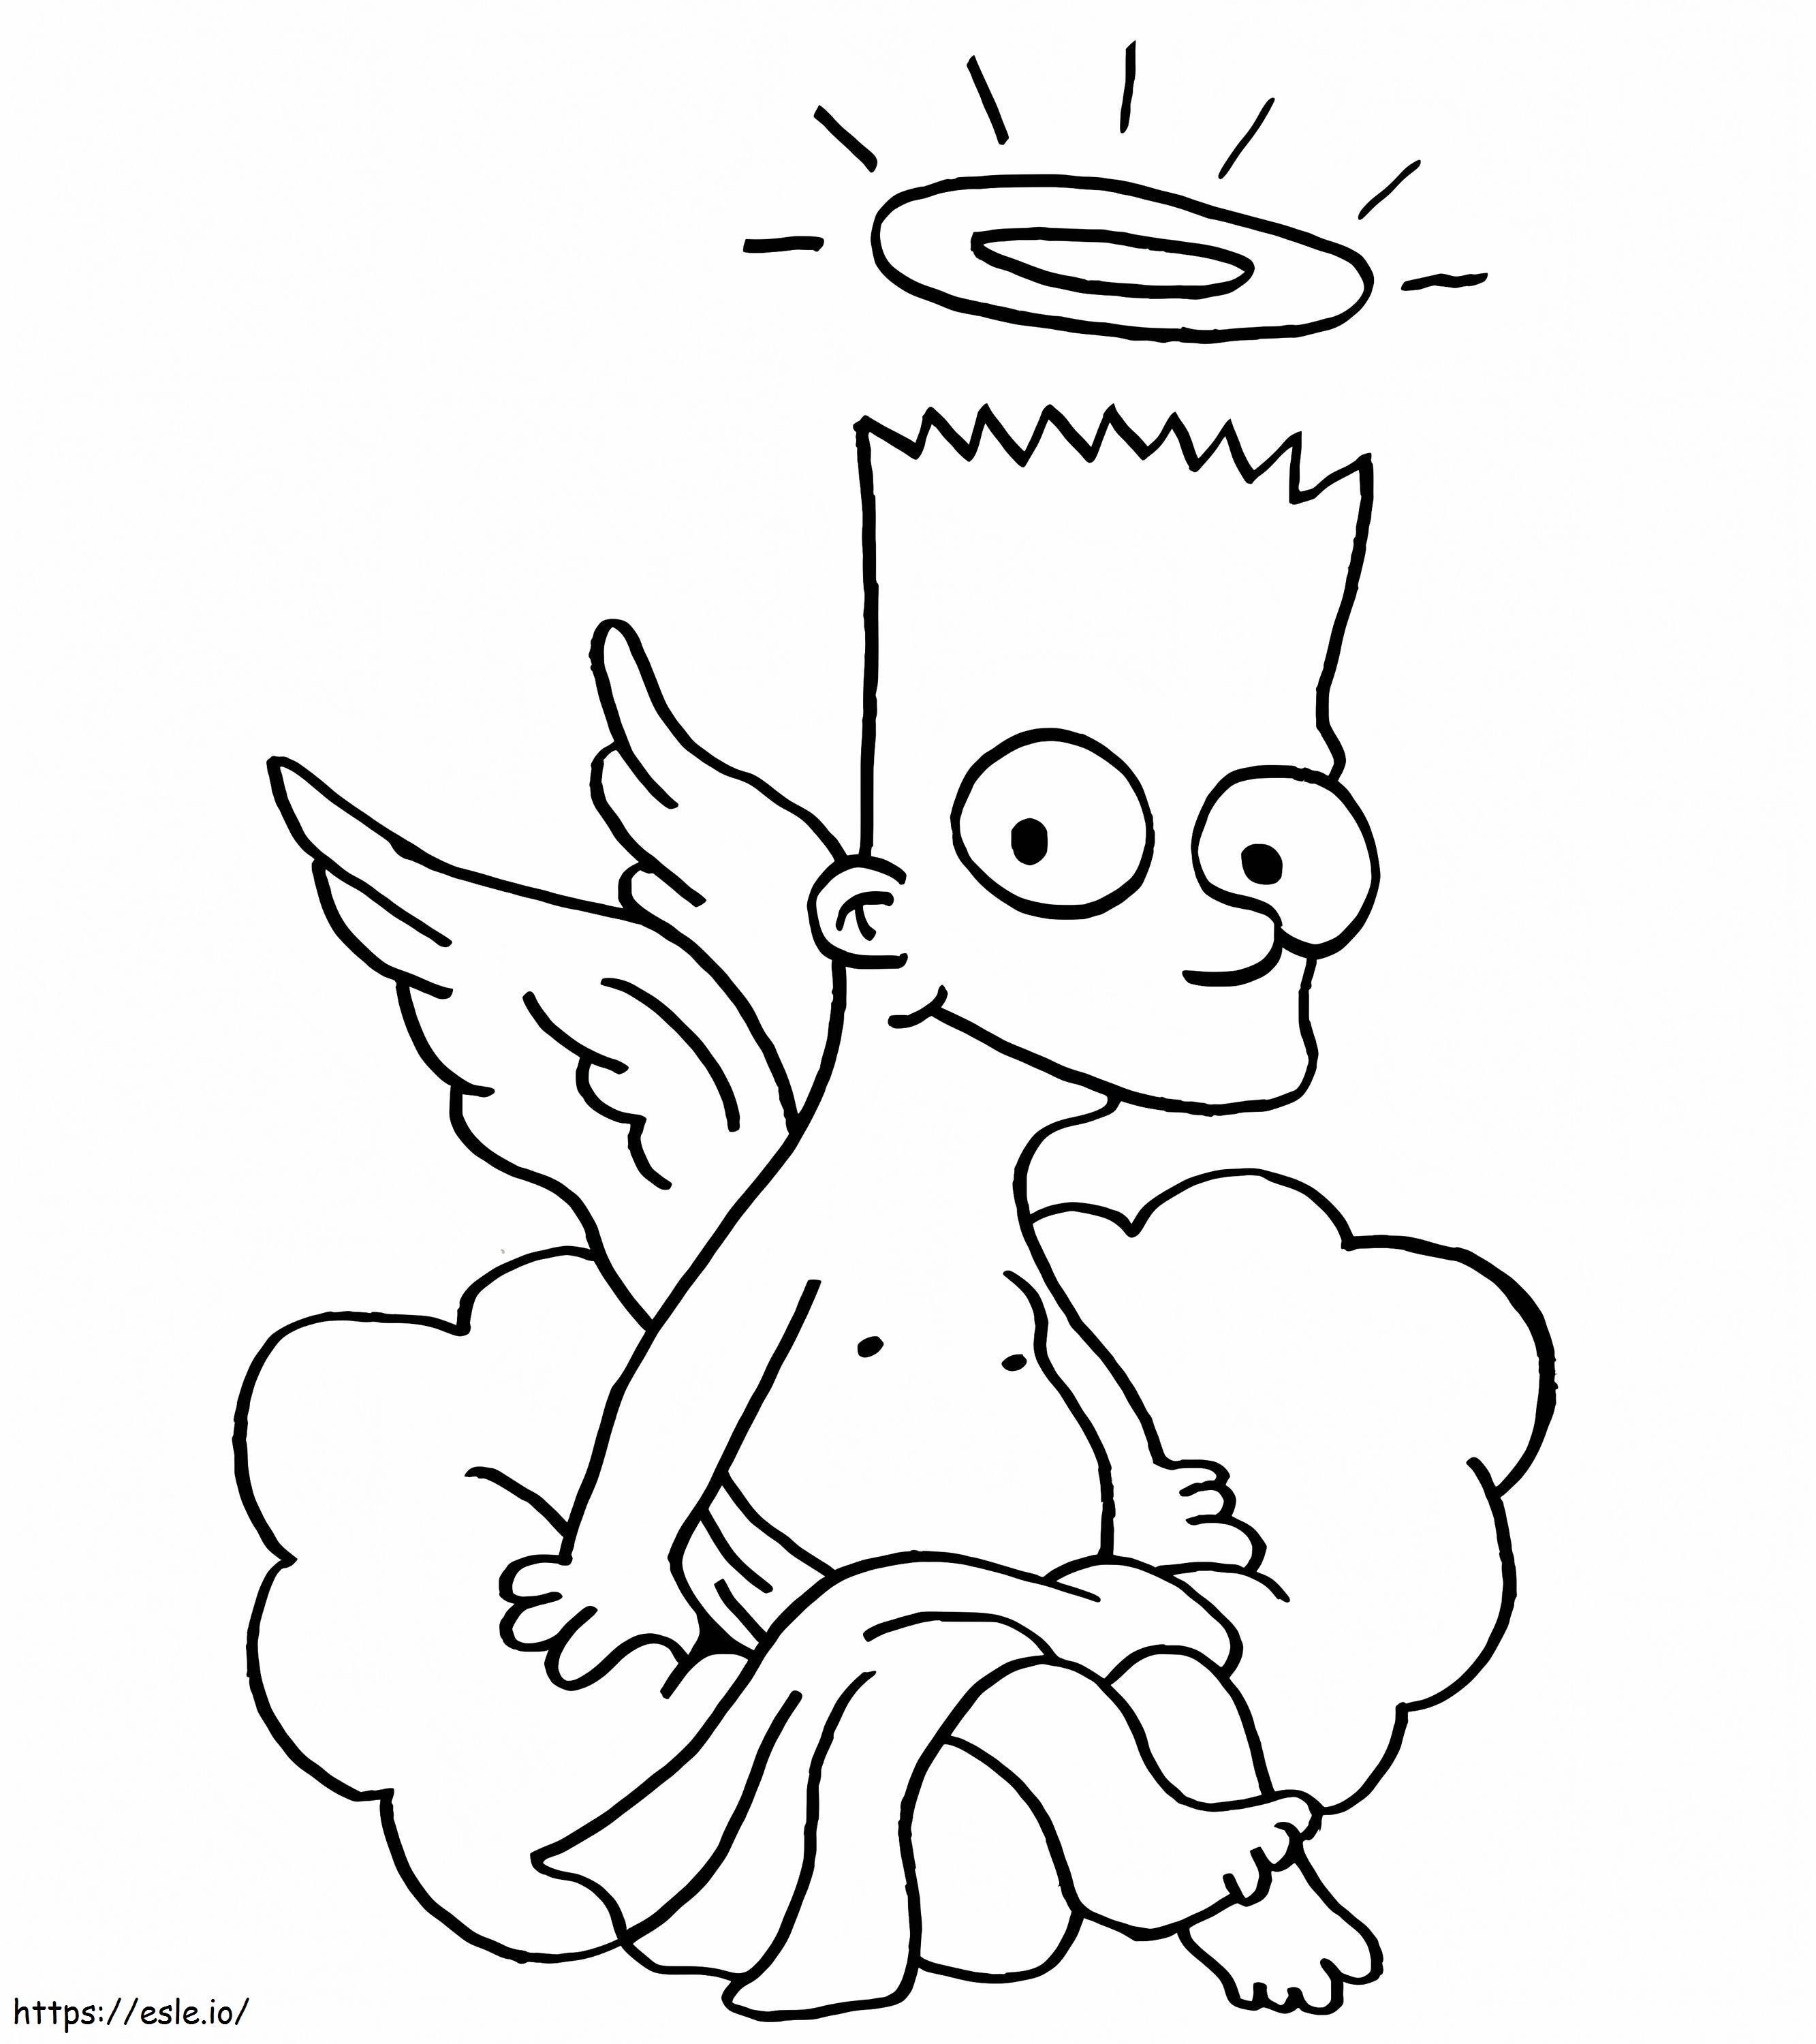 Malaikat Simpsons Gambar Mewarnai